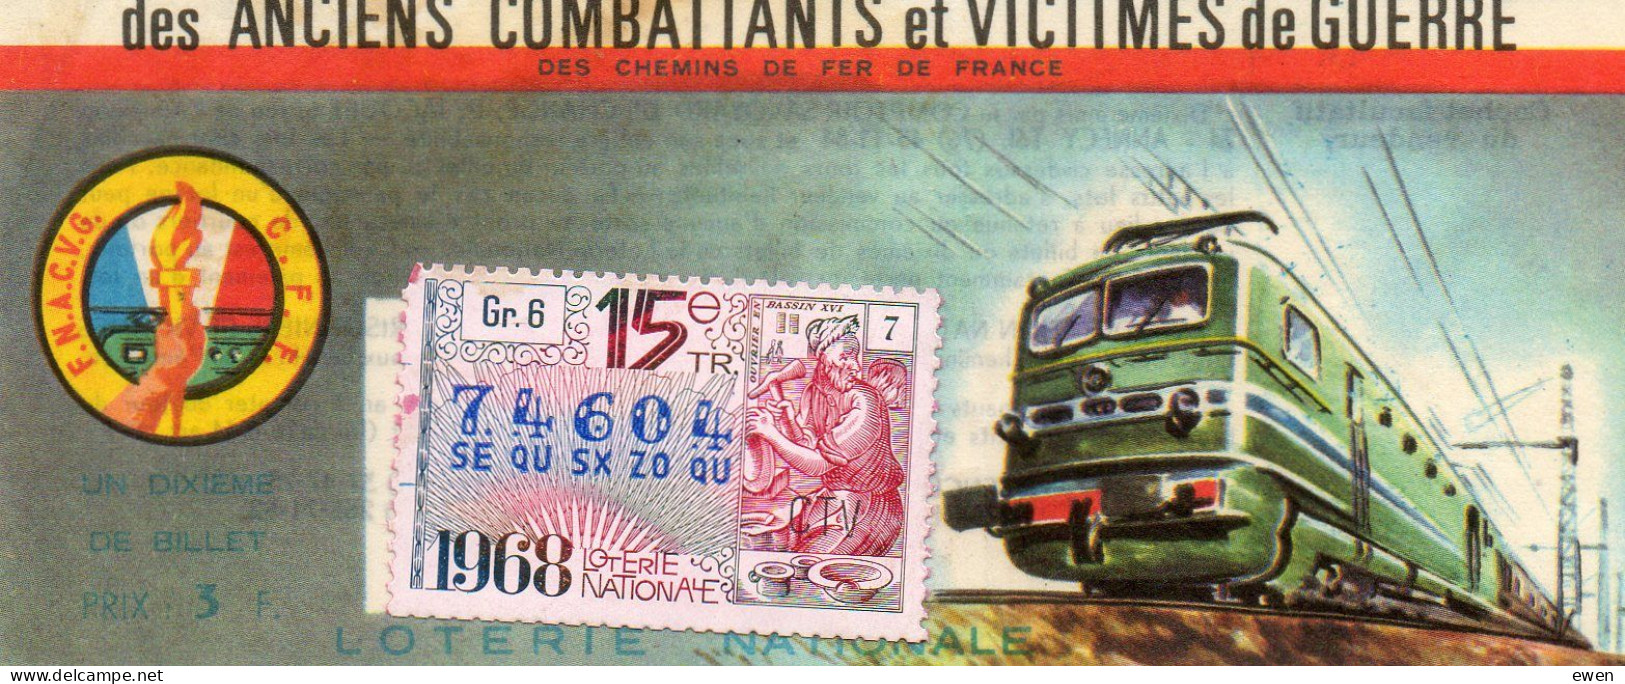 Billet Loterie Nationale Pour Victimes De Guerre. Dessin De Locomotive. 1968. - Lotterielose